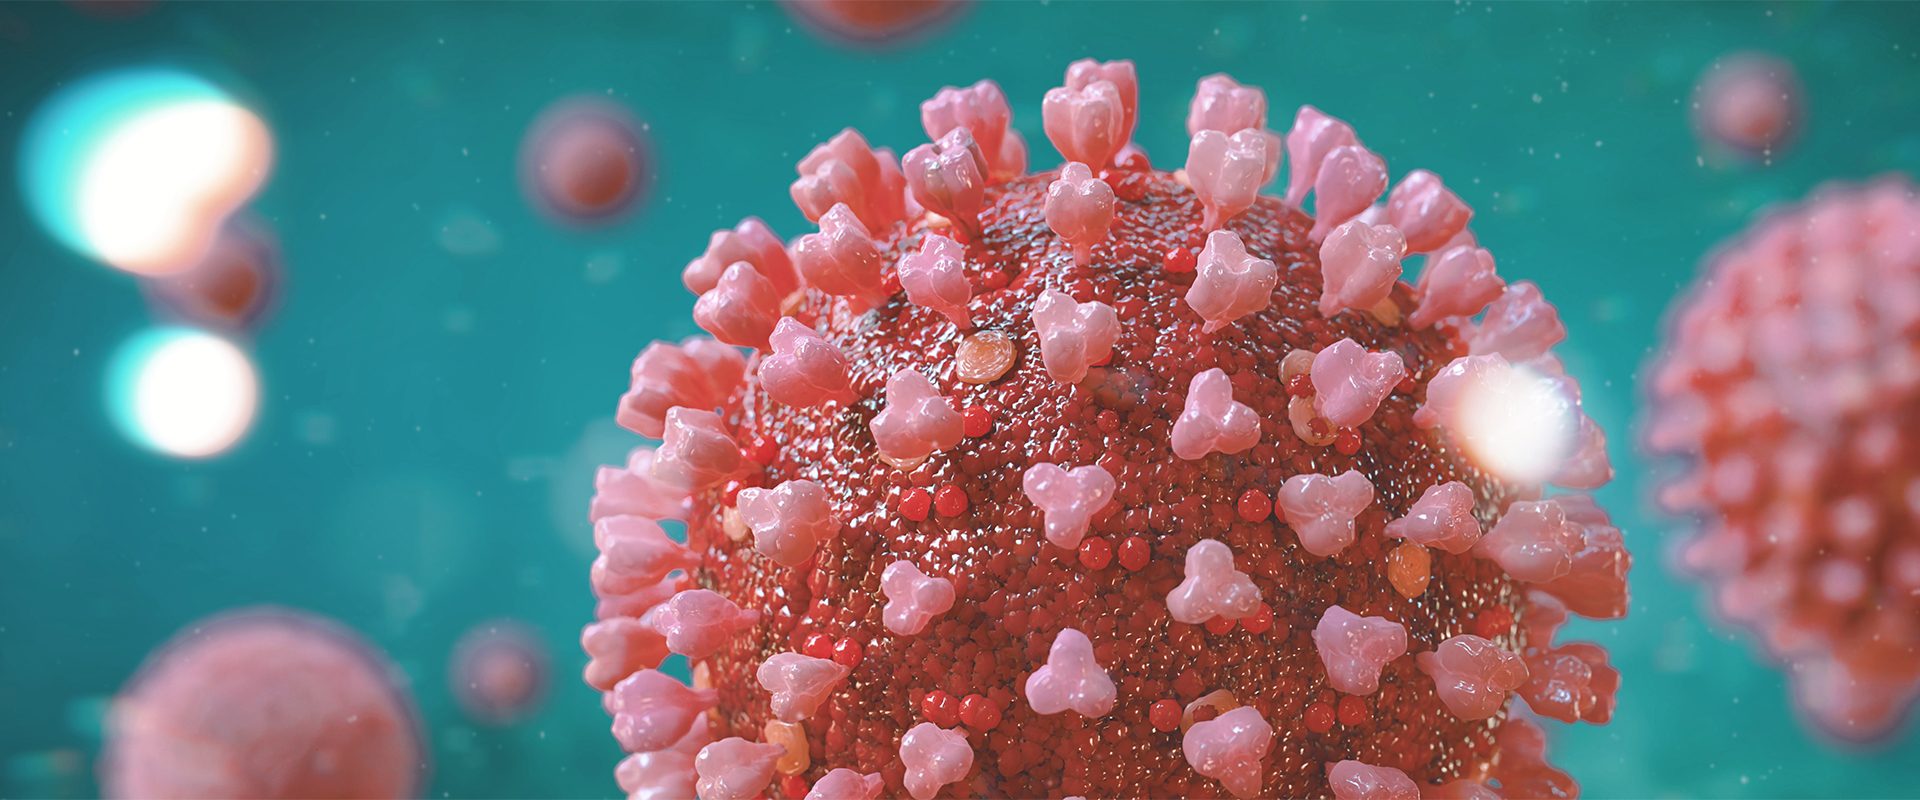 coronavirus pandemic, health threatening influenza virus